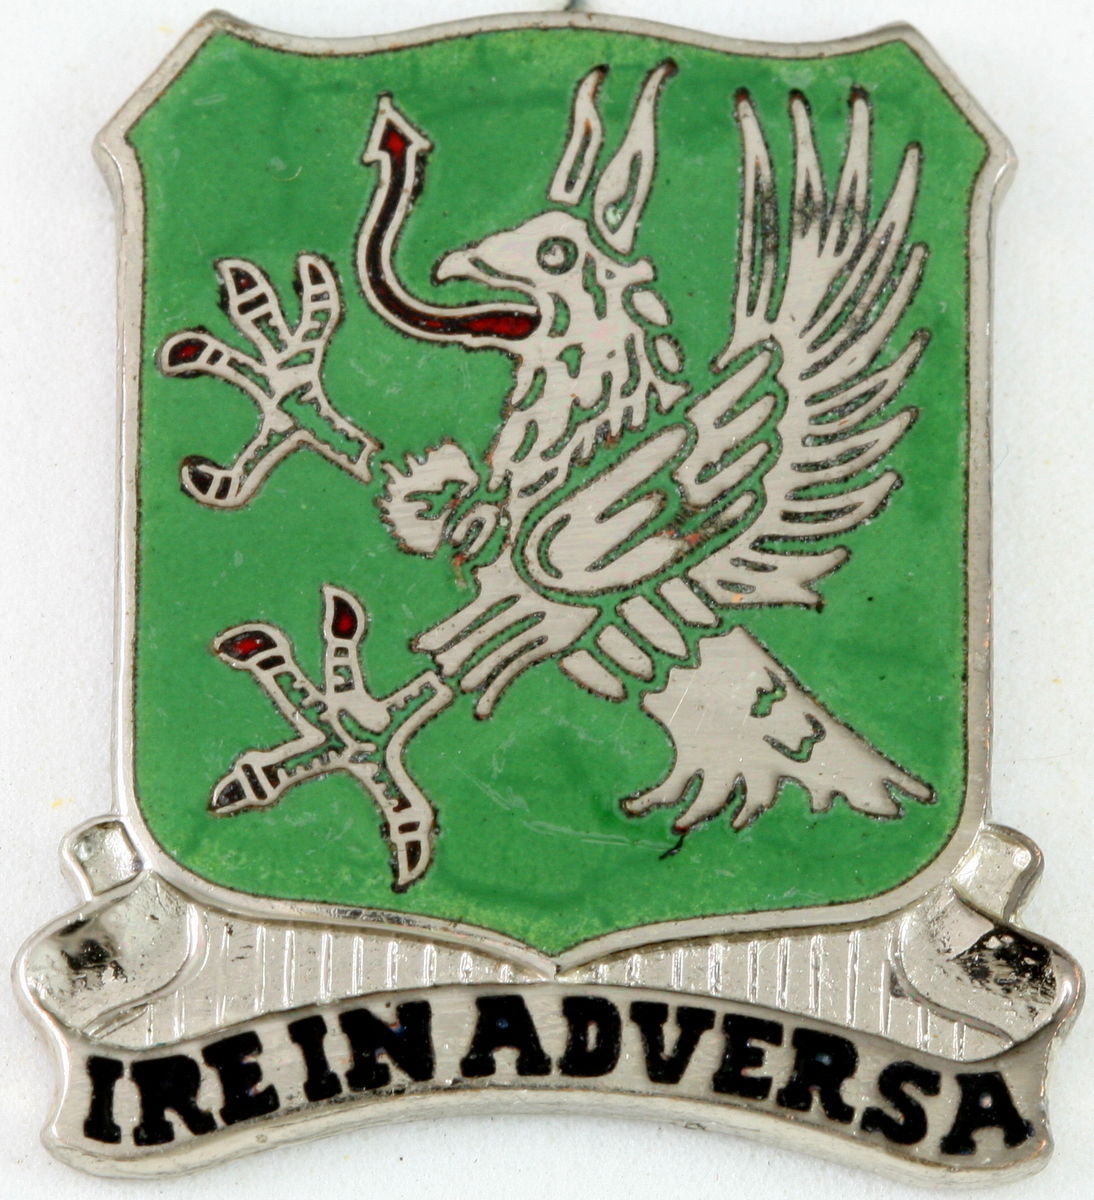 108th Armor cavalry regiment